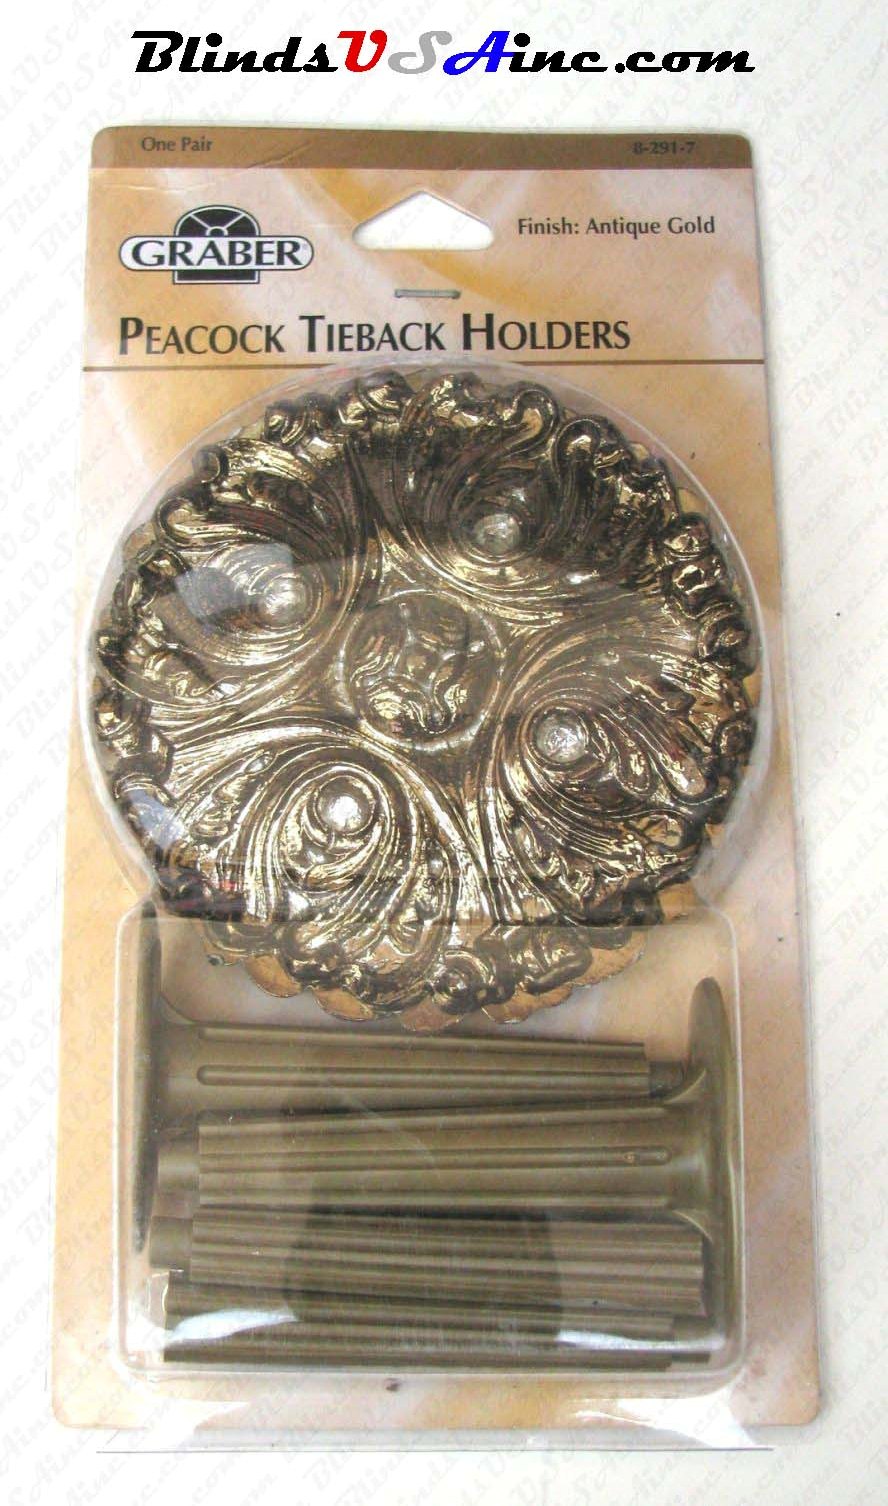 Graber Peacock Tieback Holders Part # 8-291-7